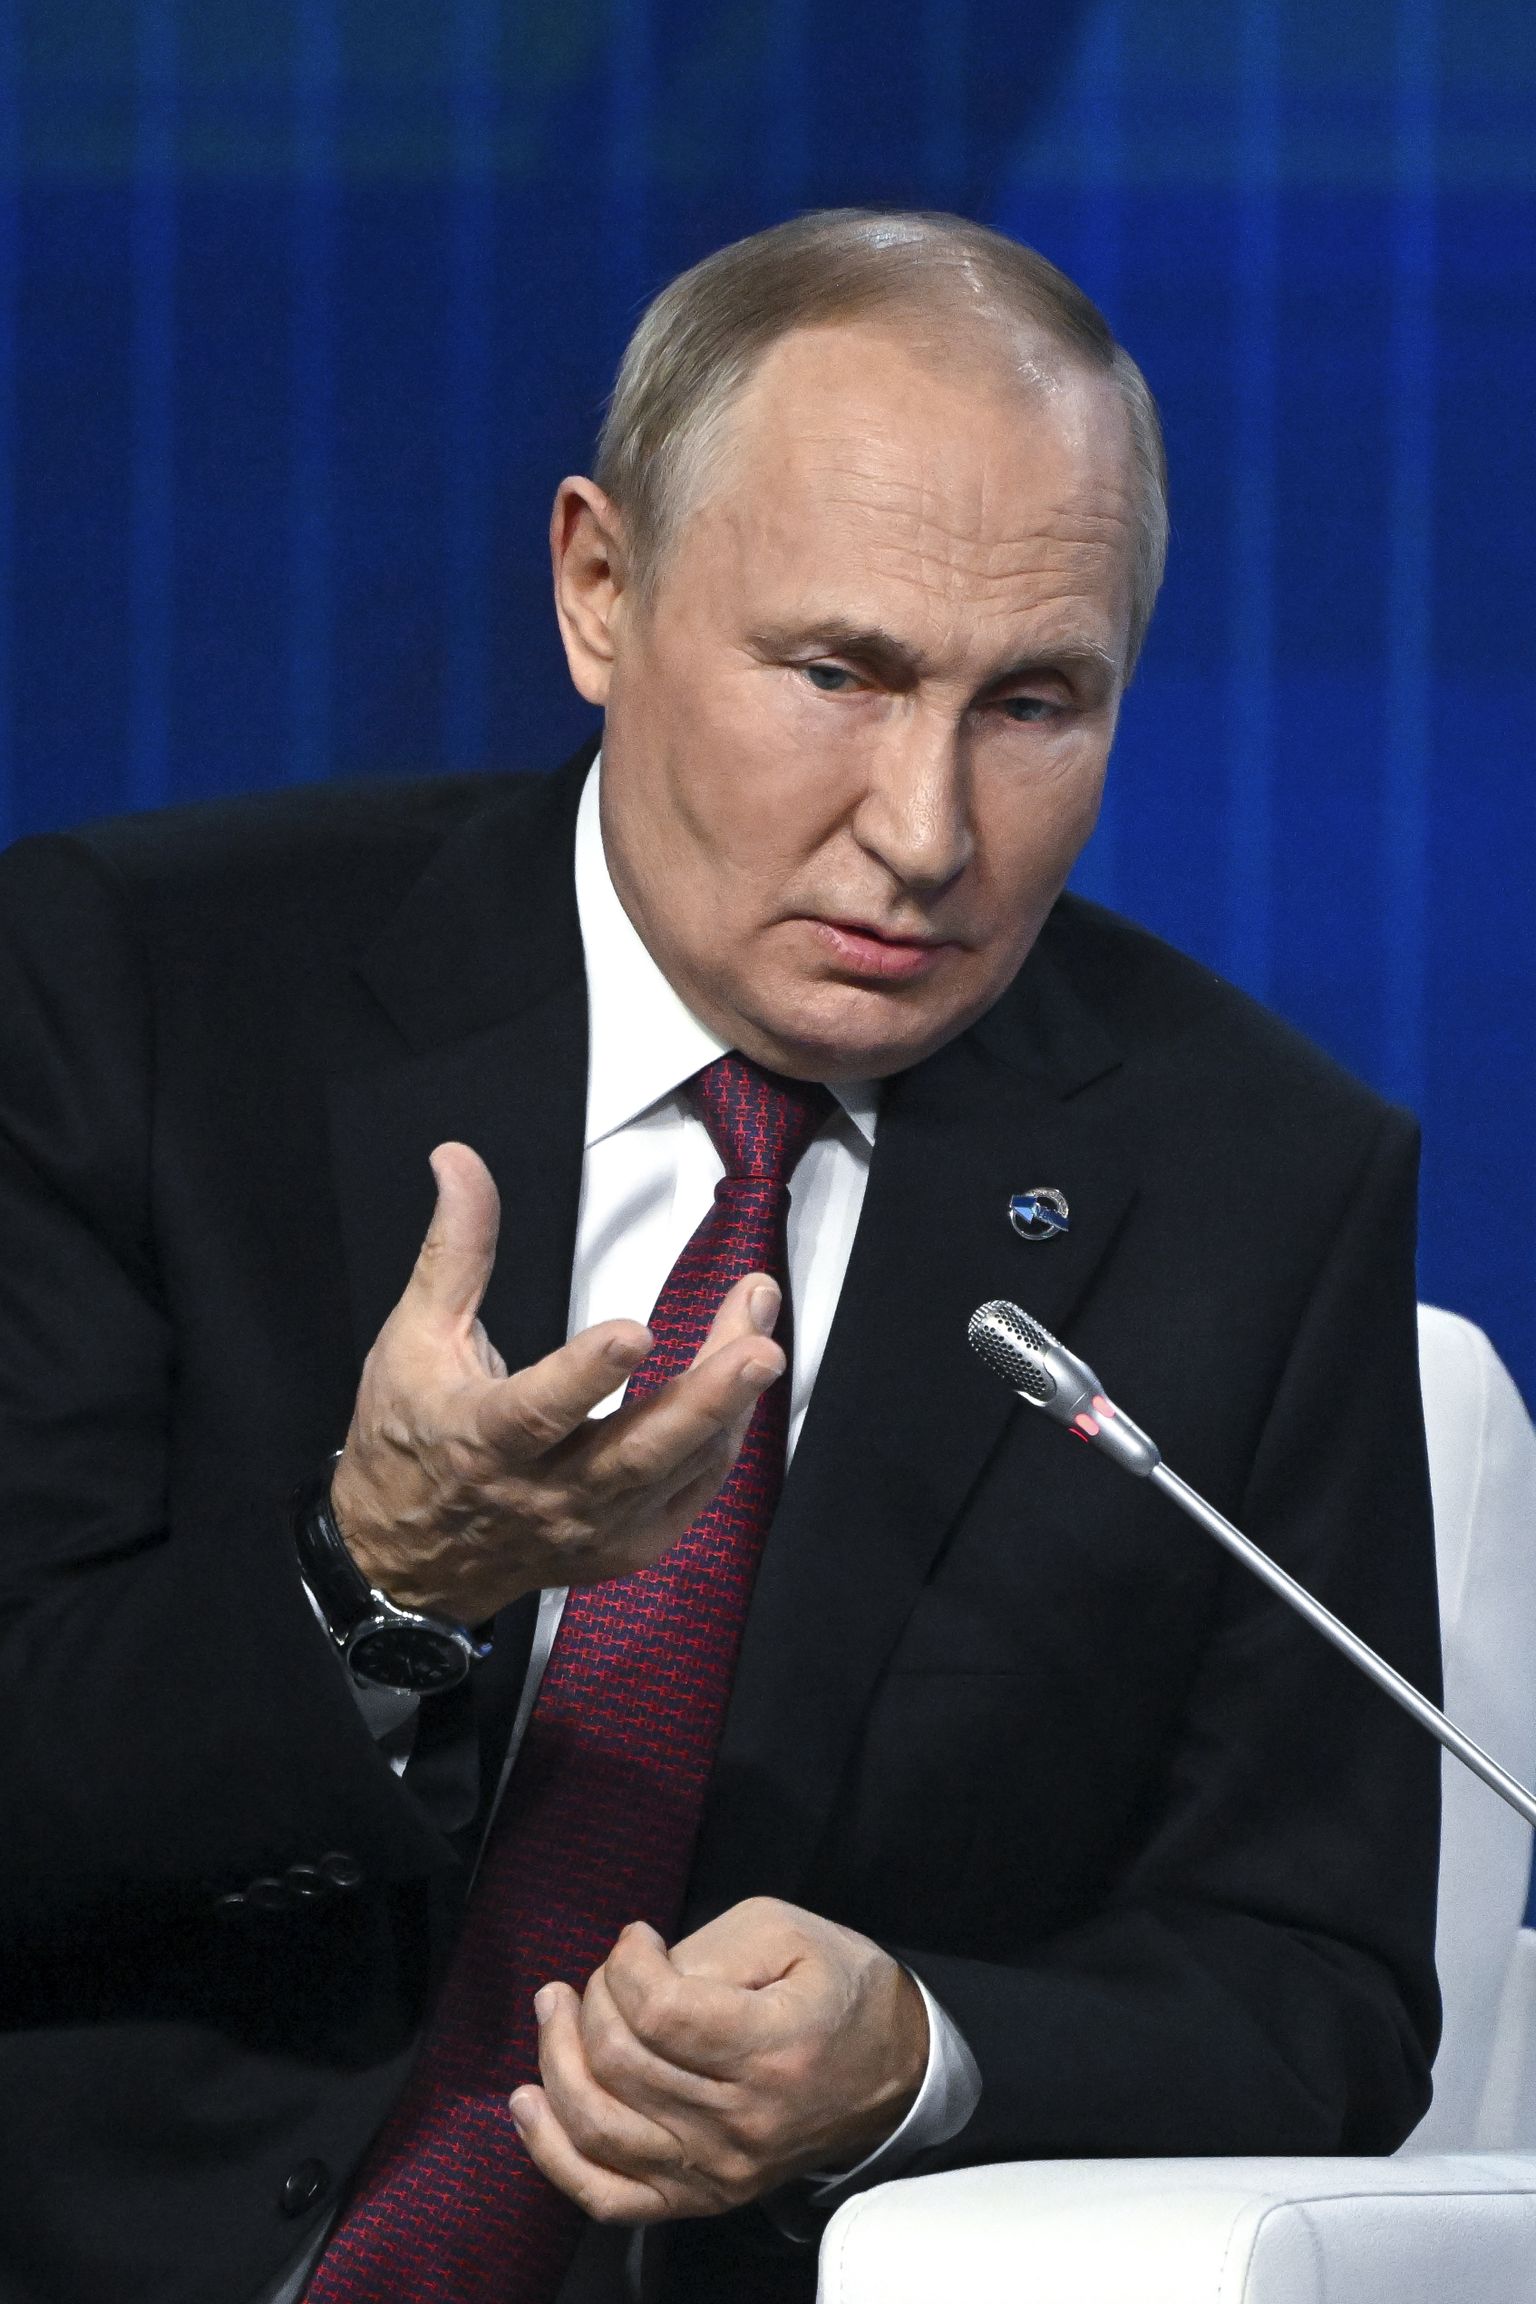 Venemaa president Vladimir Putin esinemas 27. oktoobril 2022 Moskvas Valdai aruteluklubi 19. aastakoosolekul